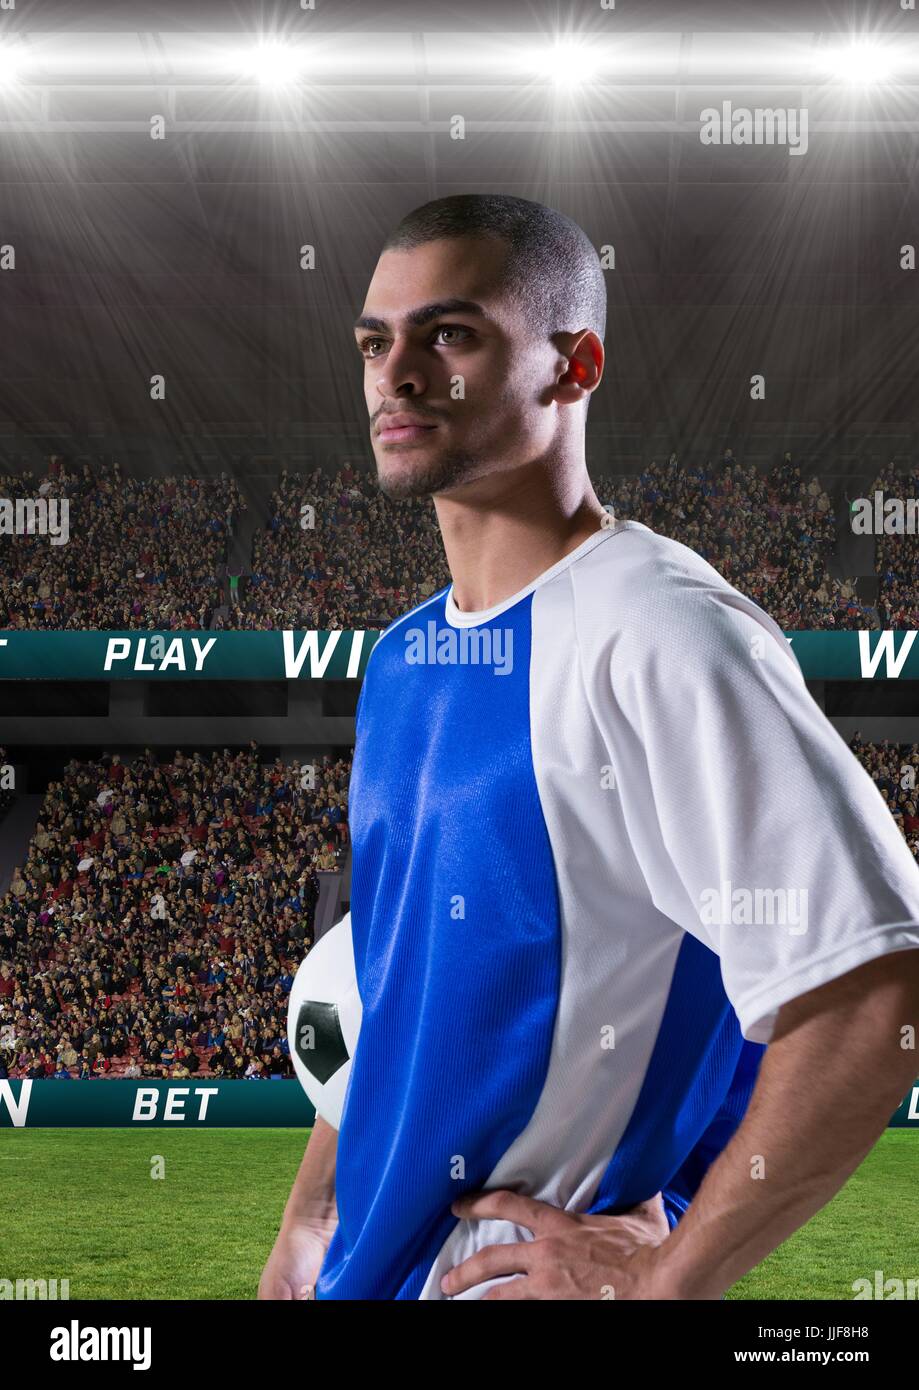 Composite numérique du joueur de football tenant une dans un stade de football Banque D'Images